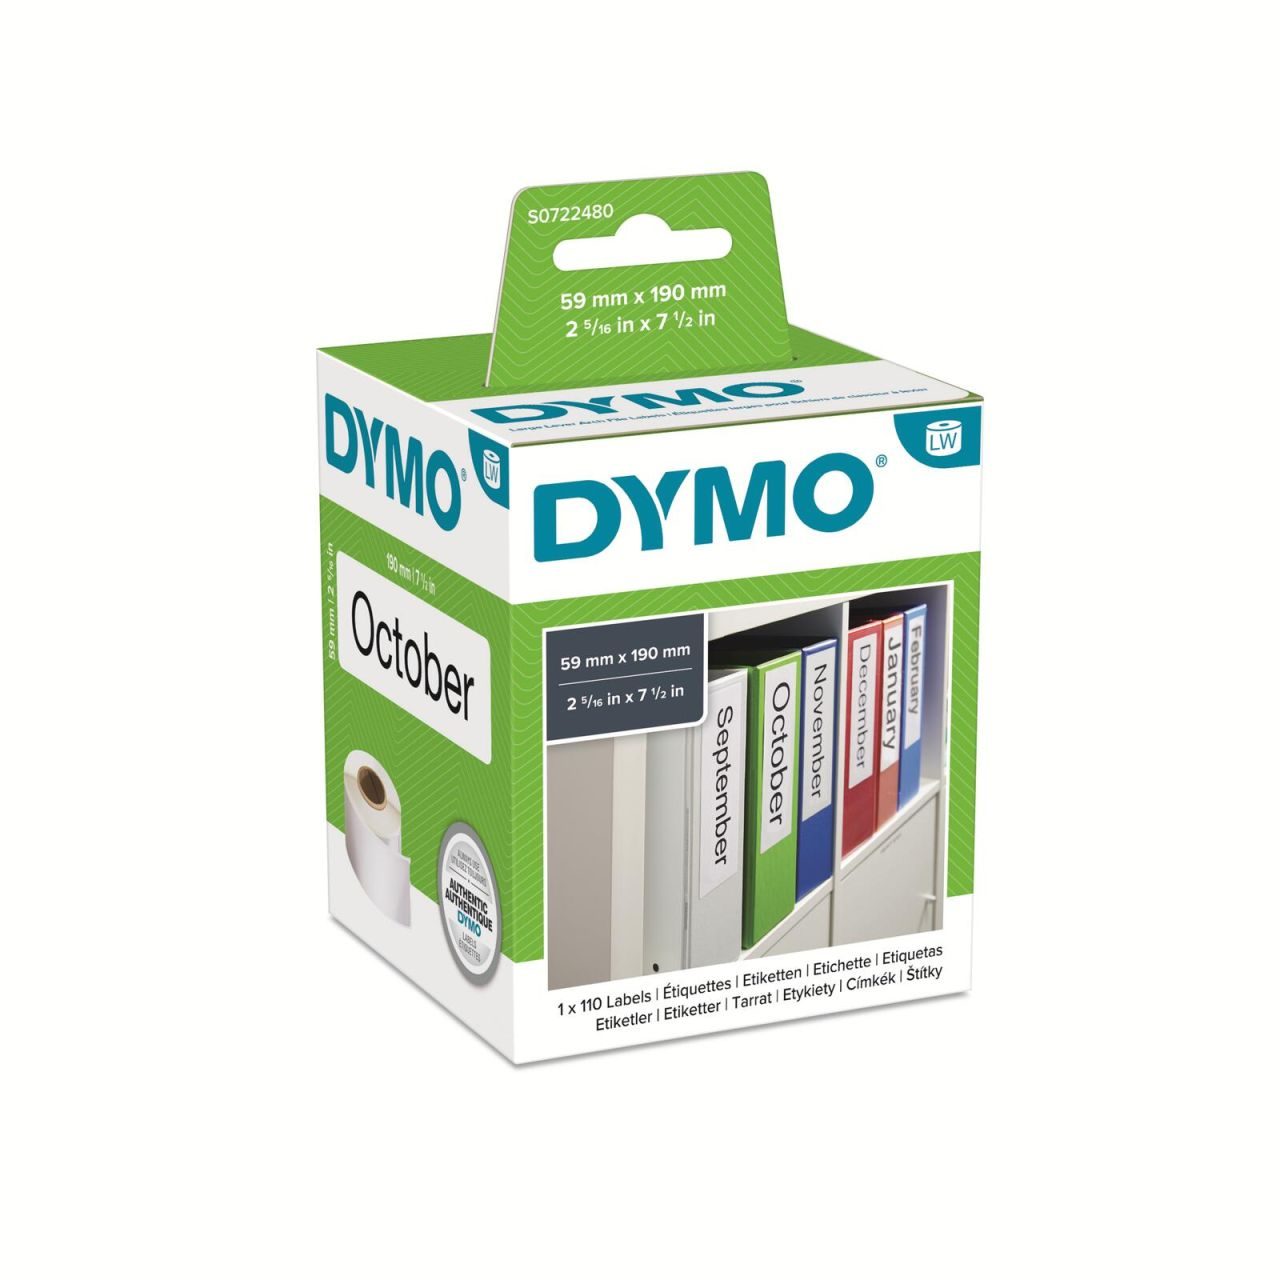 DYMO® Original Etikett für LabelWriter™ 59mm x 190mm - weiß für Ordner breit, permanent haftend, 1 x 110 Etiketten)